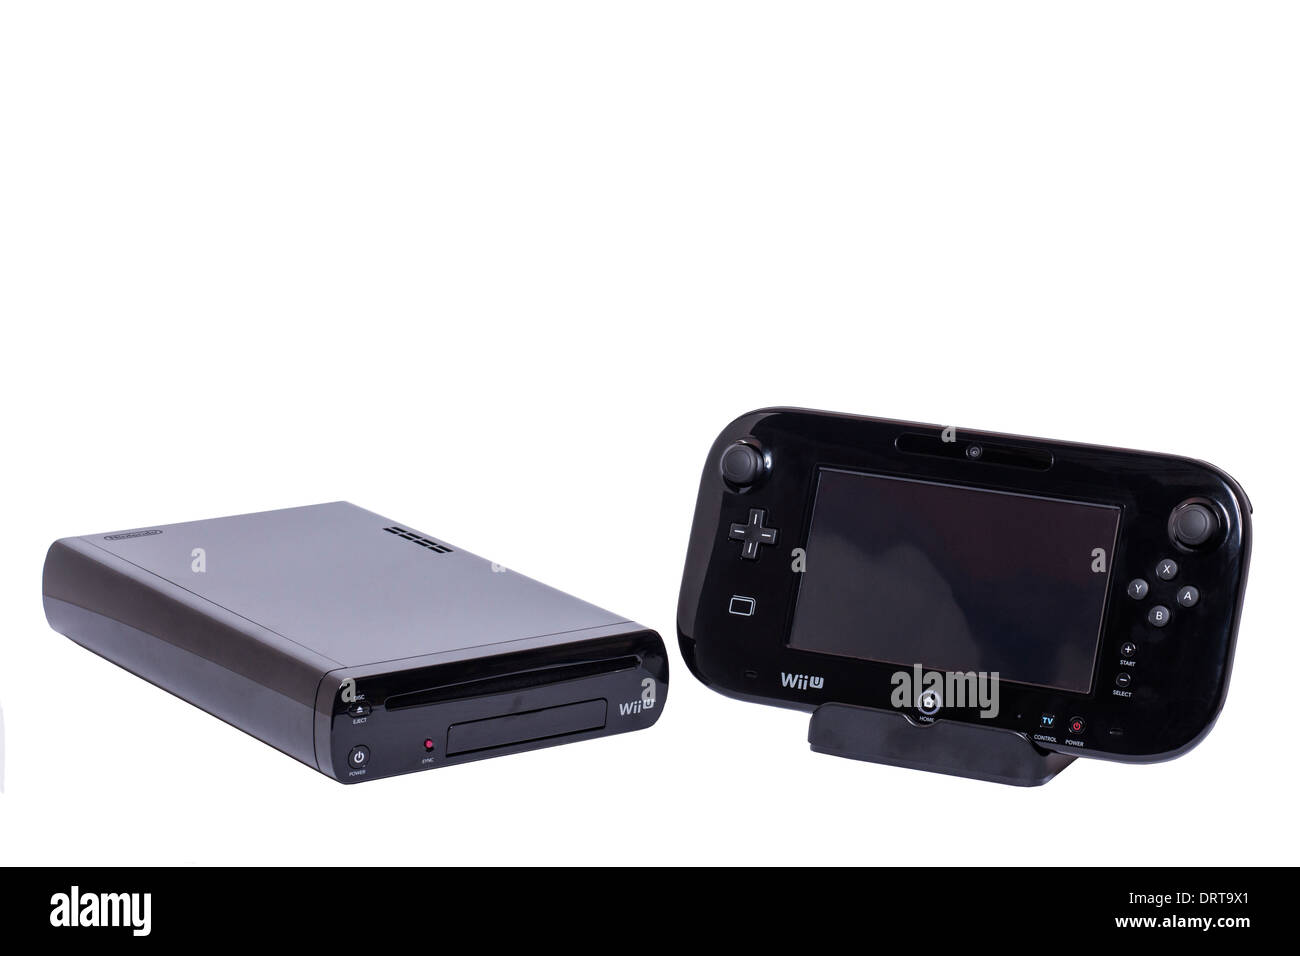 Ein Nintendo Wii U-Konsole und Mobilteil Controller auf weißem Hintergrund  Stockfotografie - Alamy